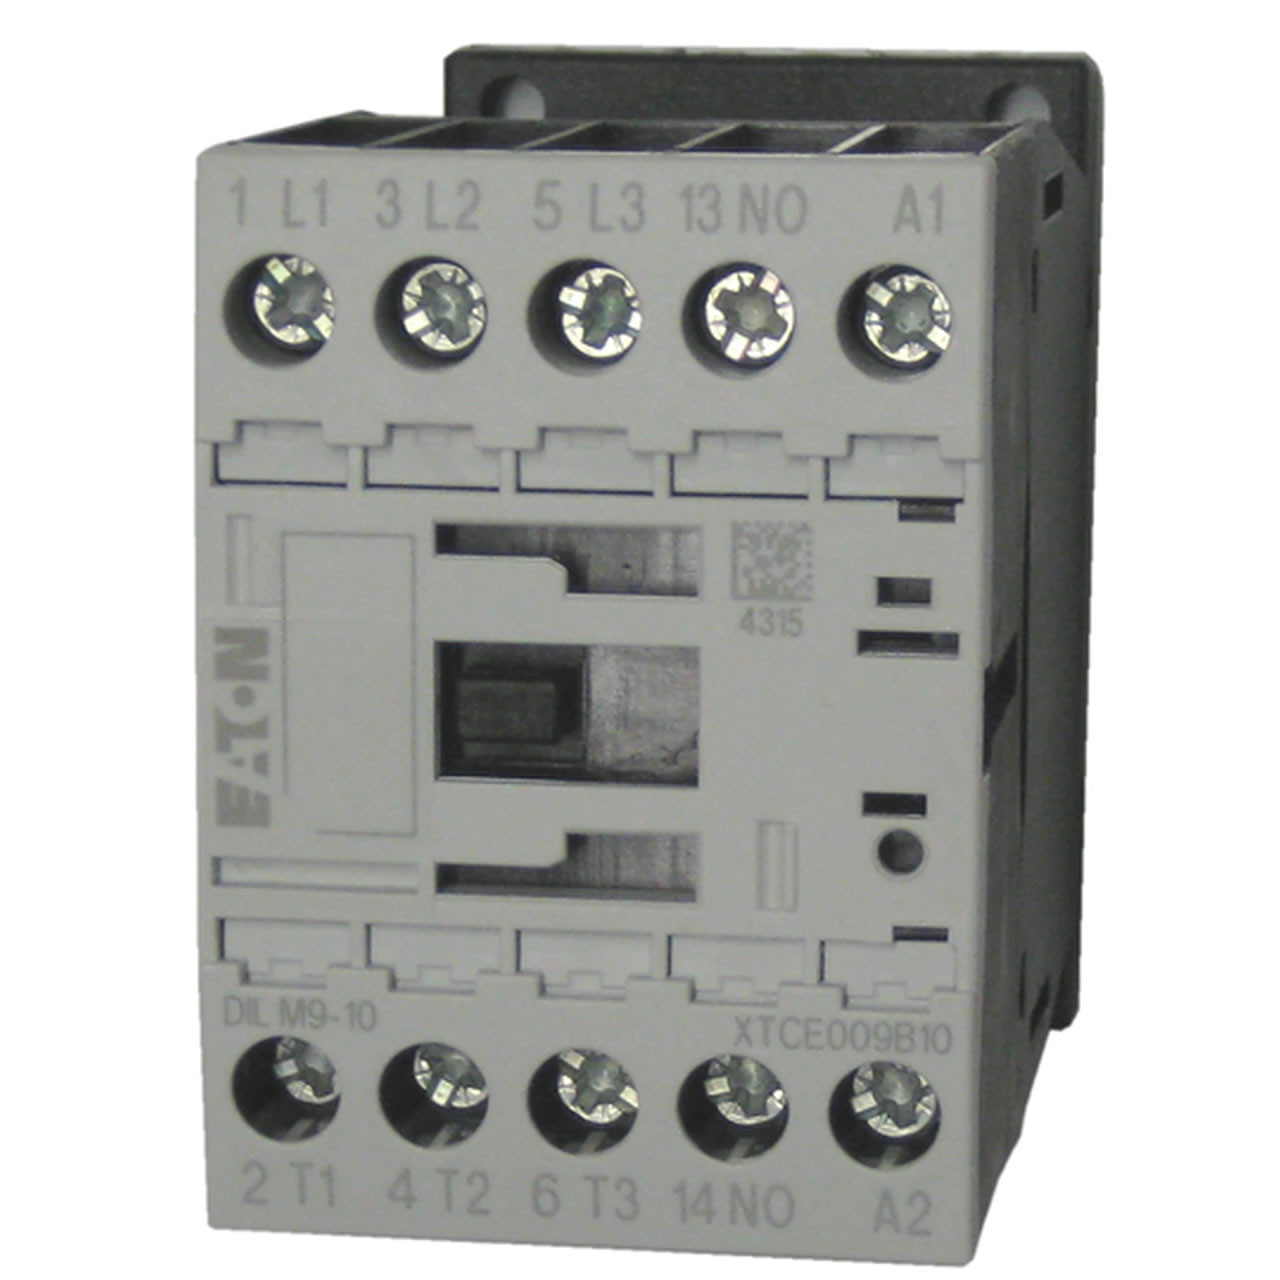 Eaton/Moeller DILM9-10 600 volt contactor